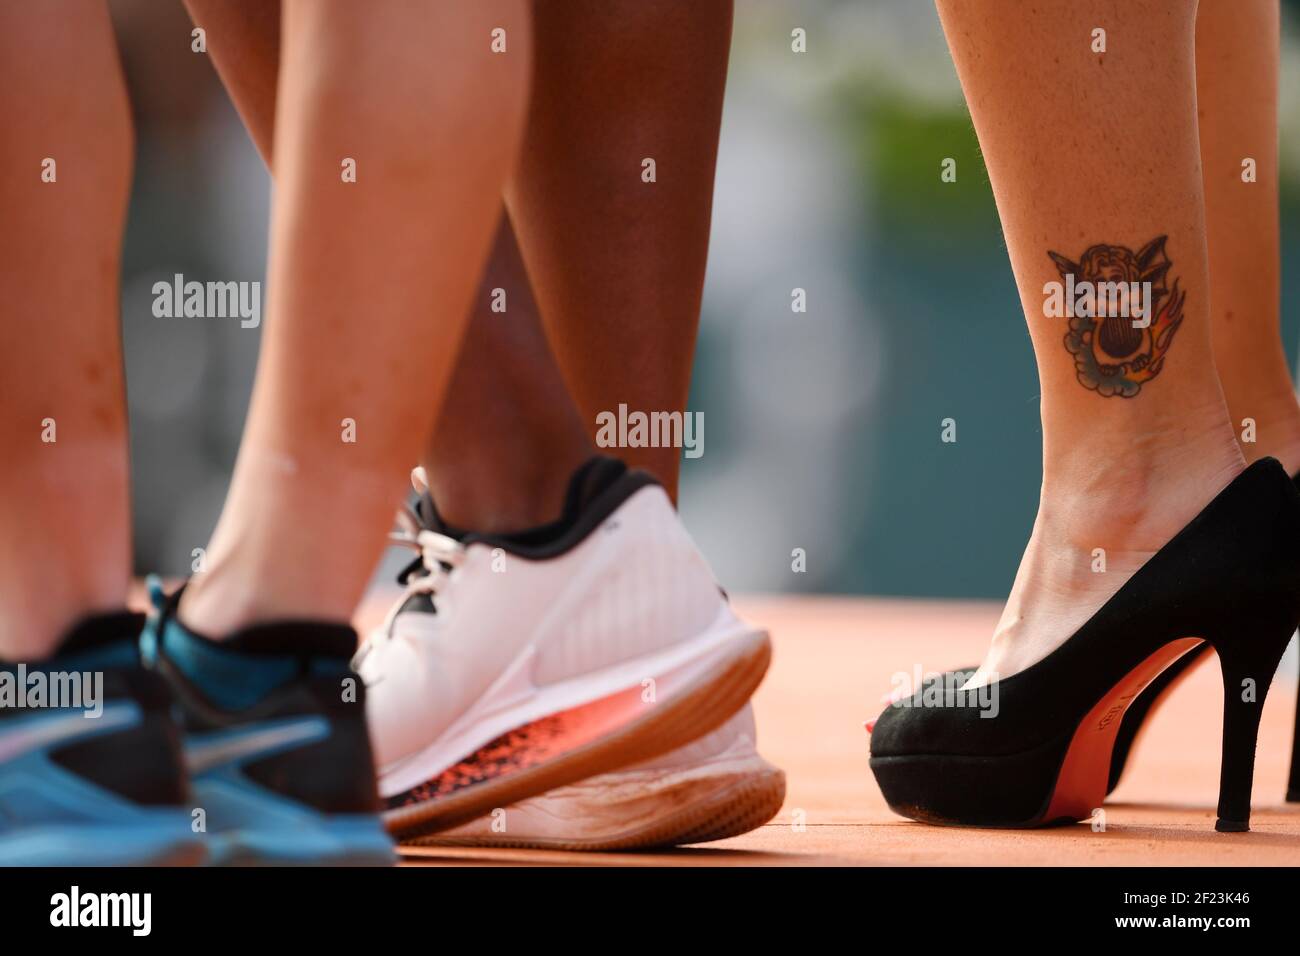 Chaussures de l'ancienne tennisfemme Arantxa Sanchez Vicario lors de l'Open  de tennis français Roland Garros 2018, final Women, le 9 juin 2018, au  stade Roland Garros à Paris, France - photo Philippe